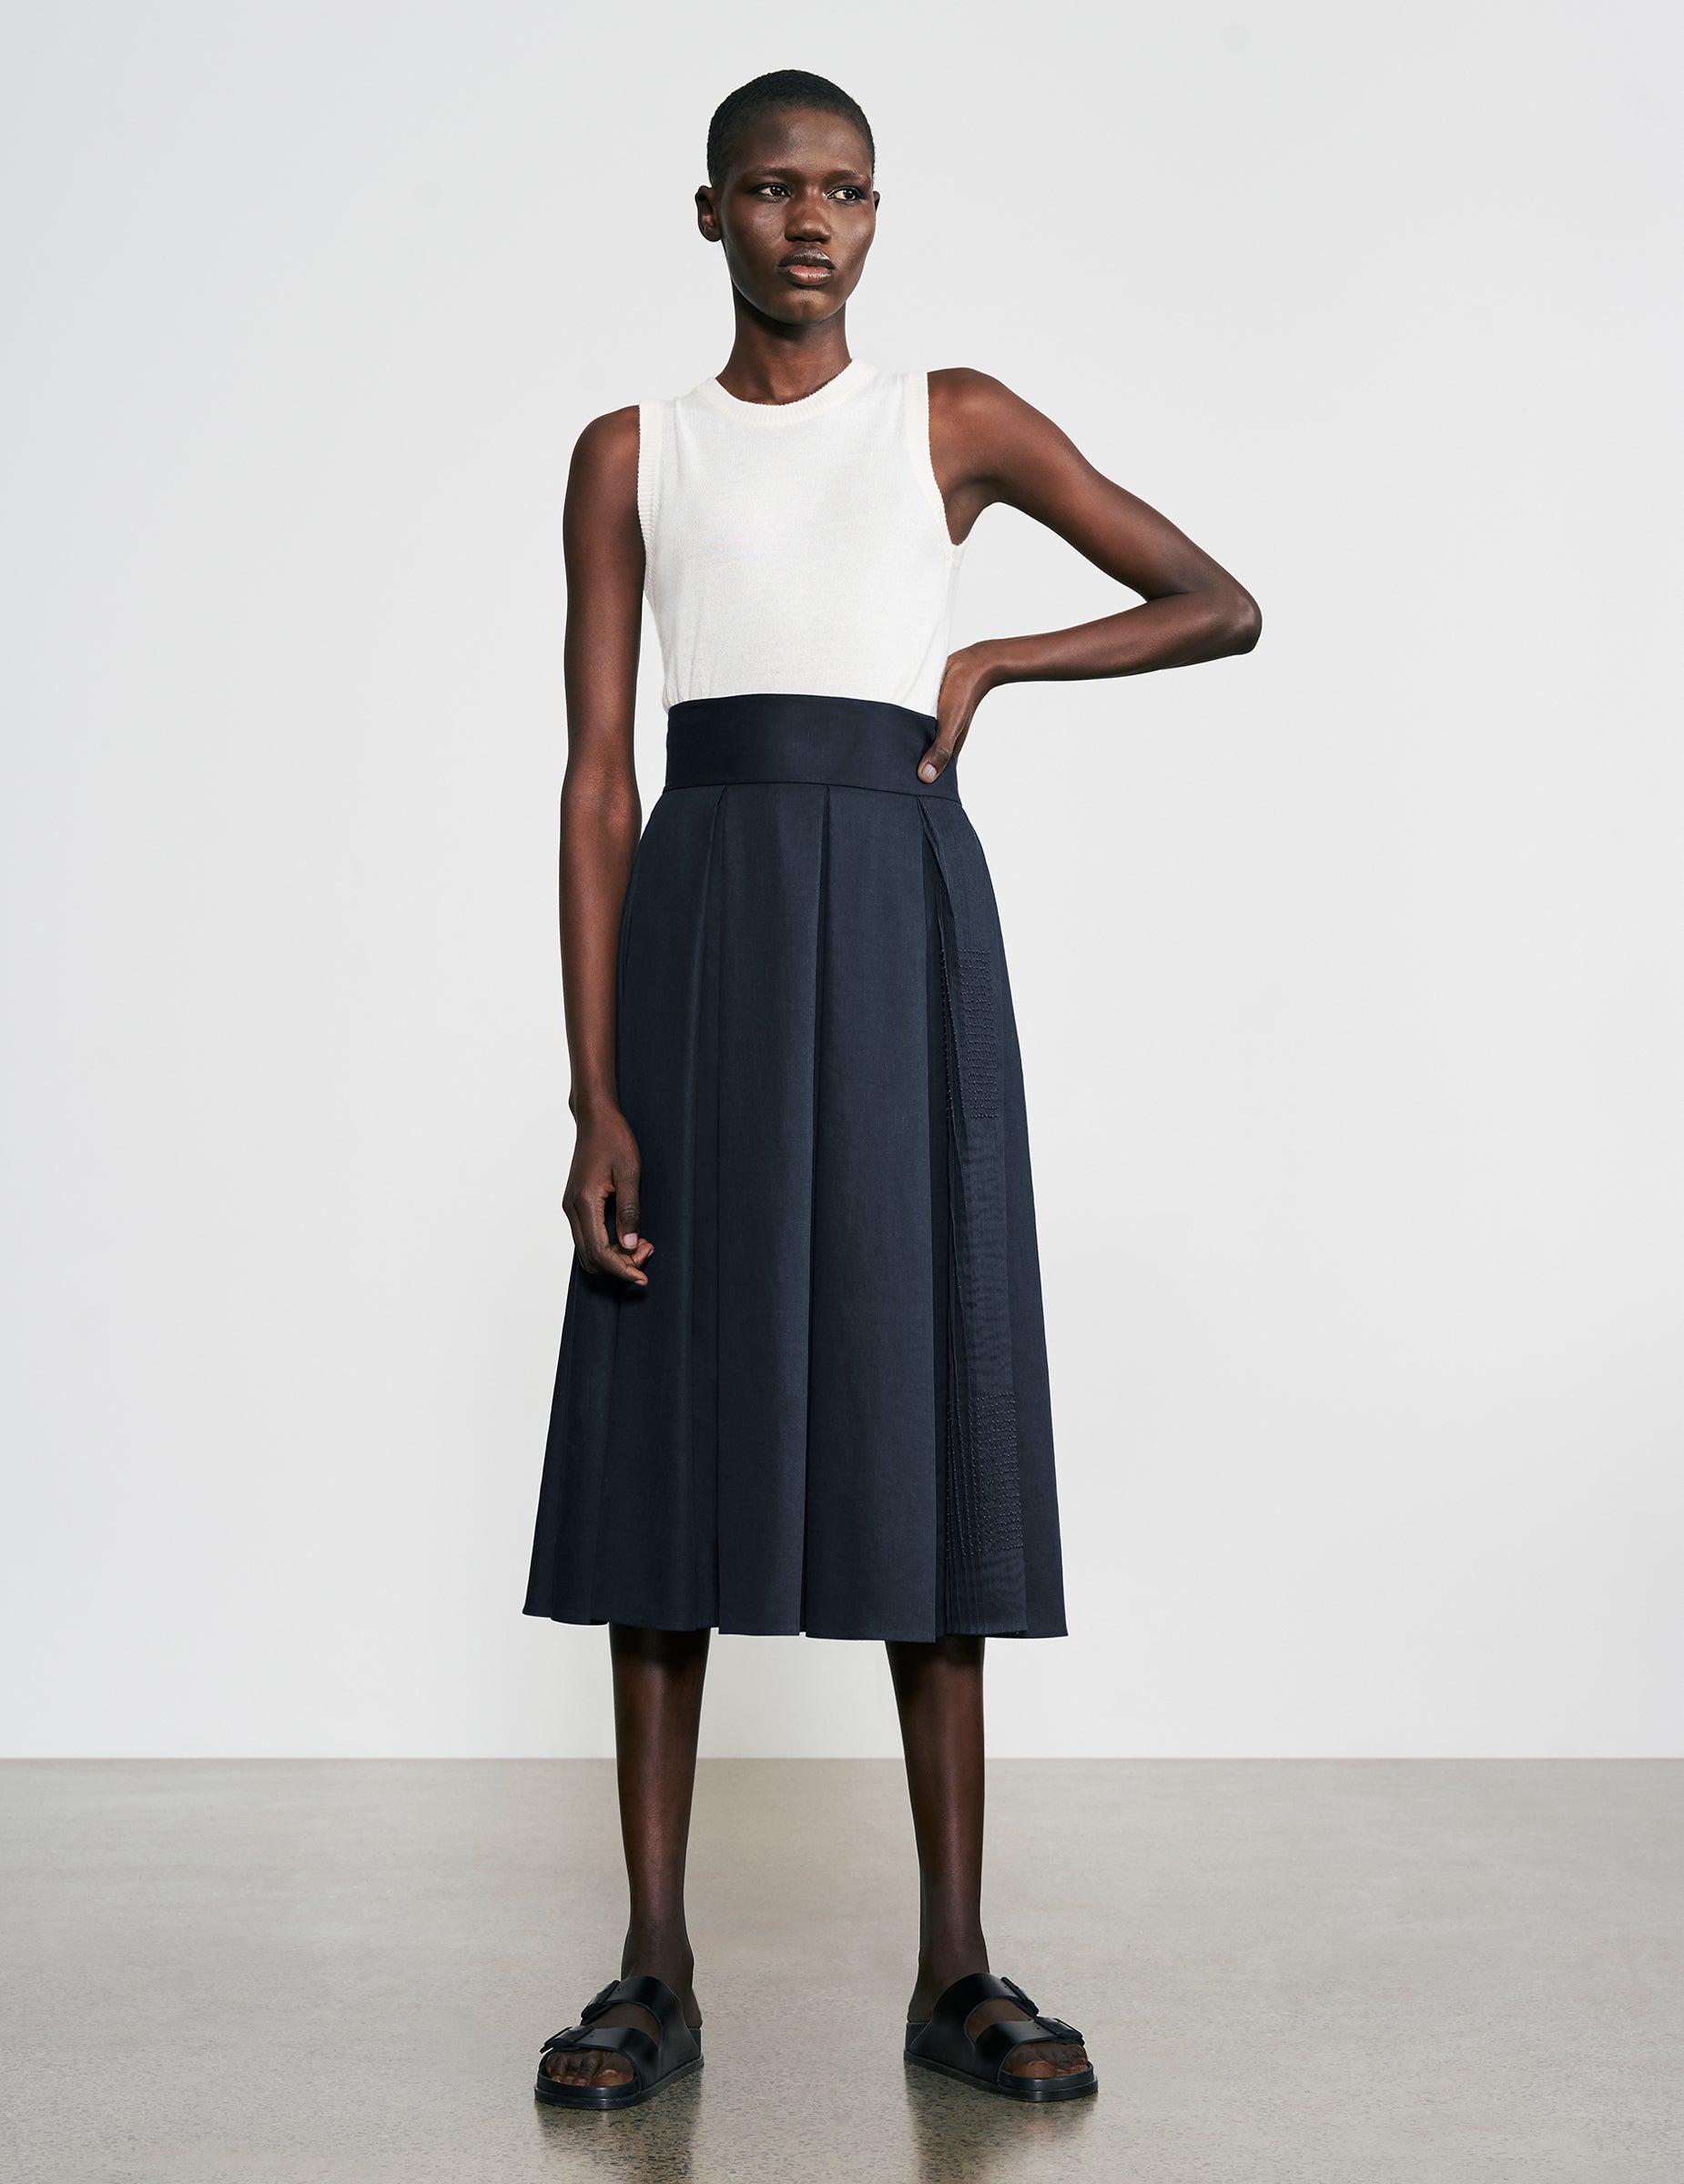 Full Cotton Midi Skirt - Black, Flora Bloom